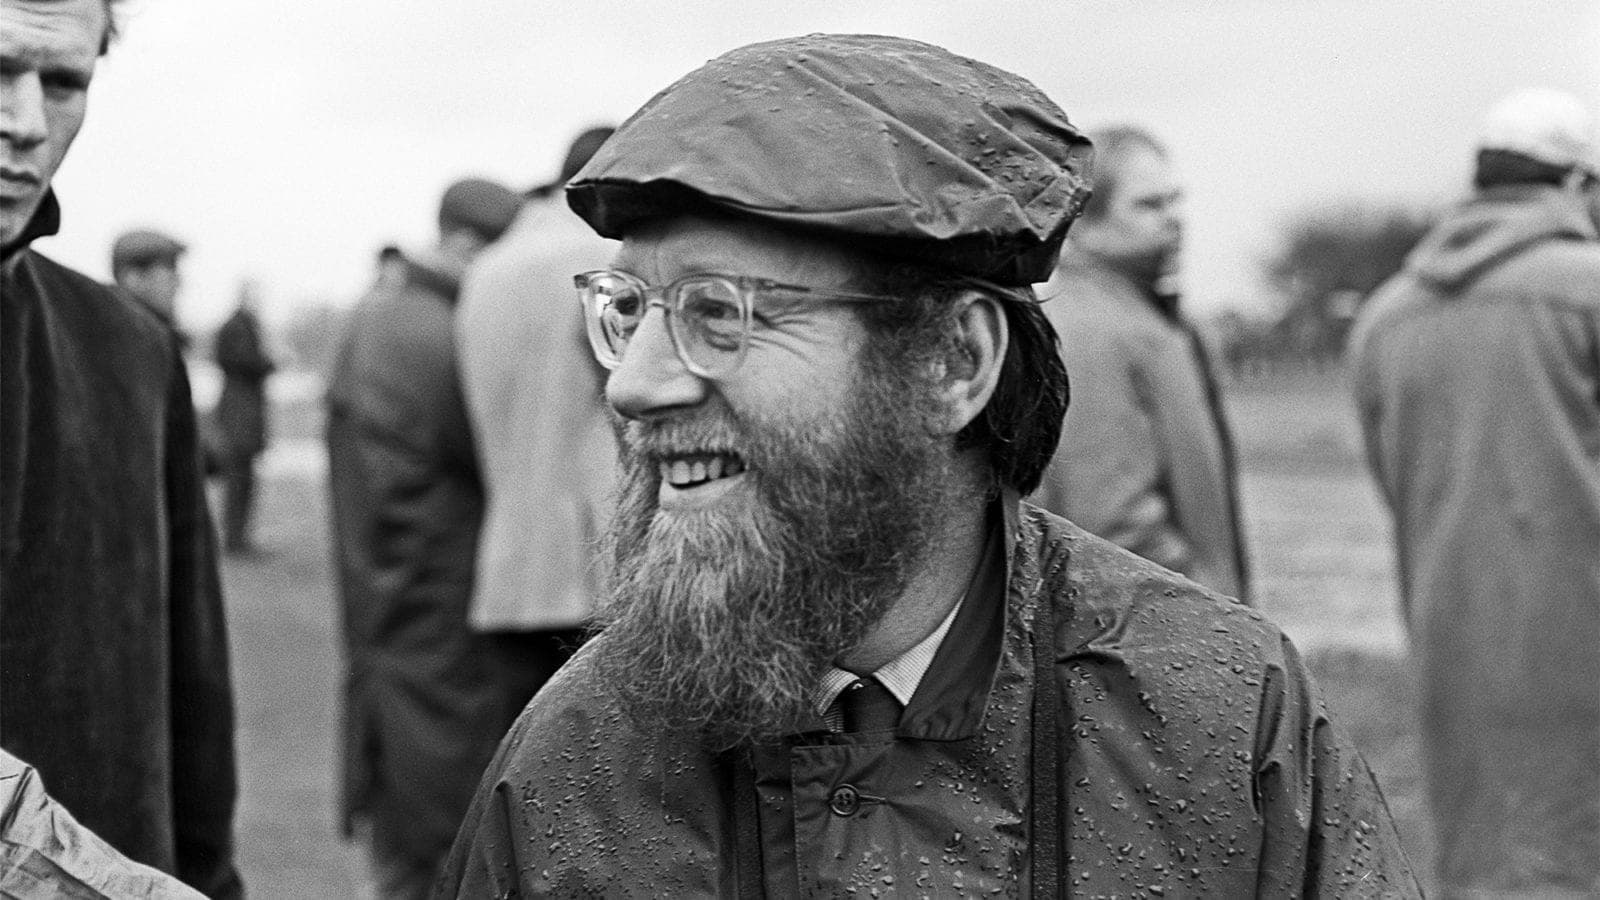 Denis Jenkinson in 1962